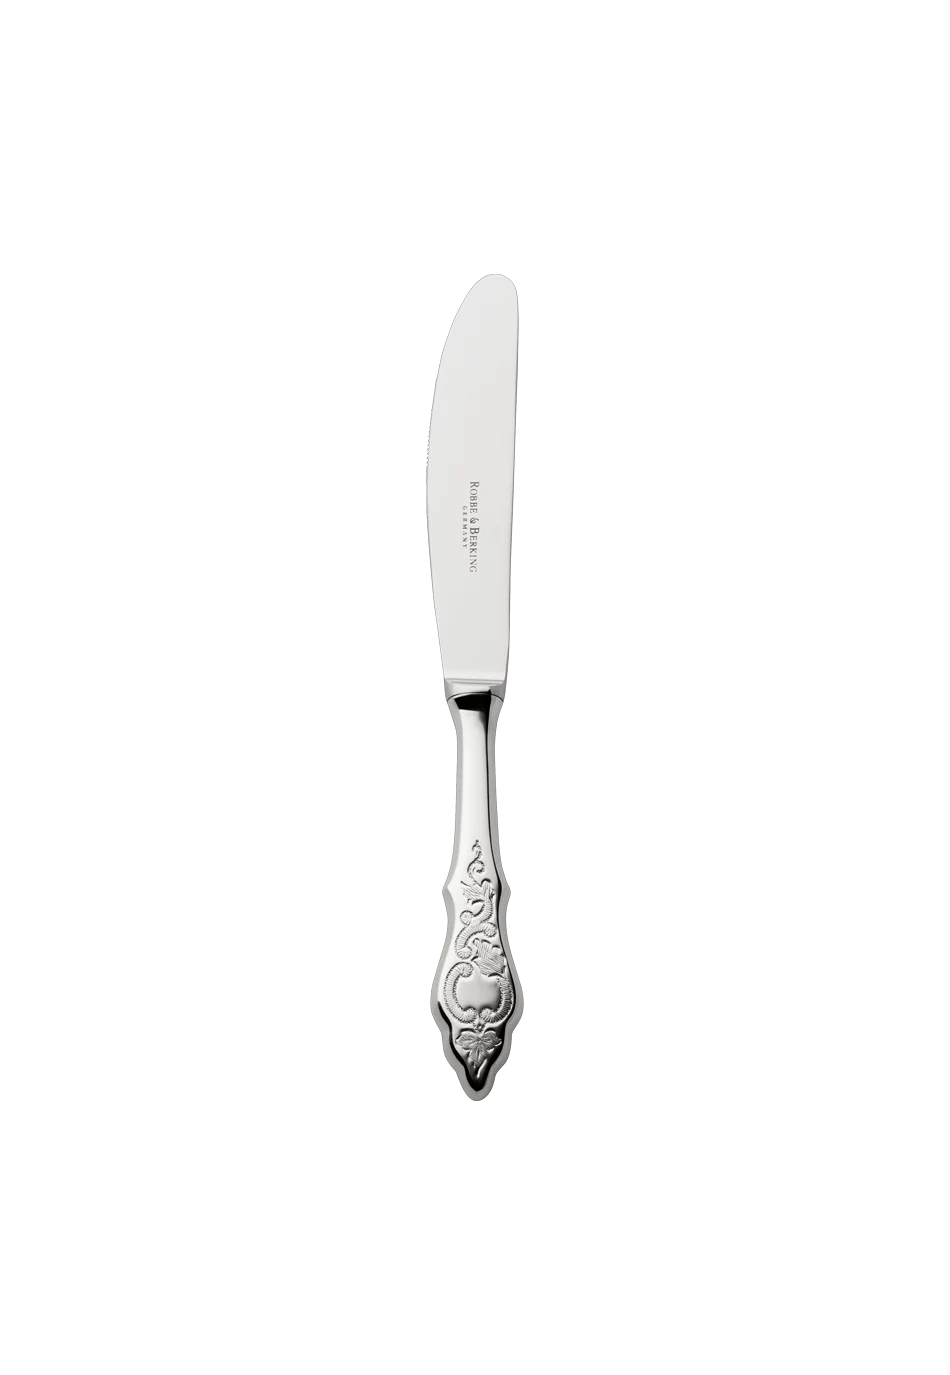 Ostfriesen Children's Knife (18/8 stainless steel)